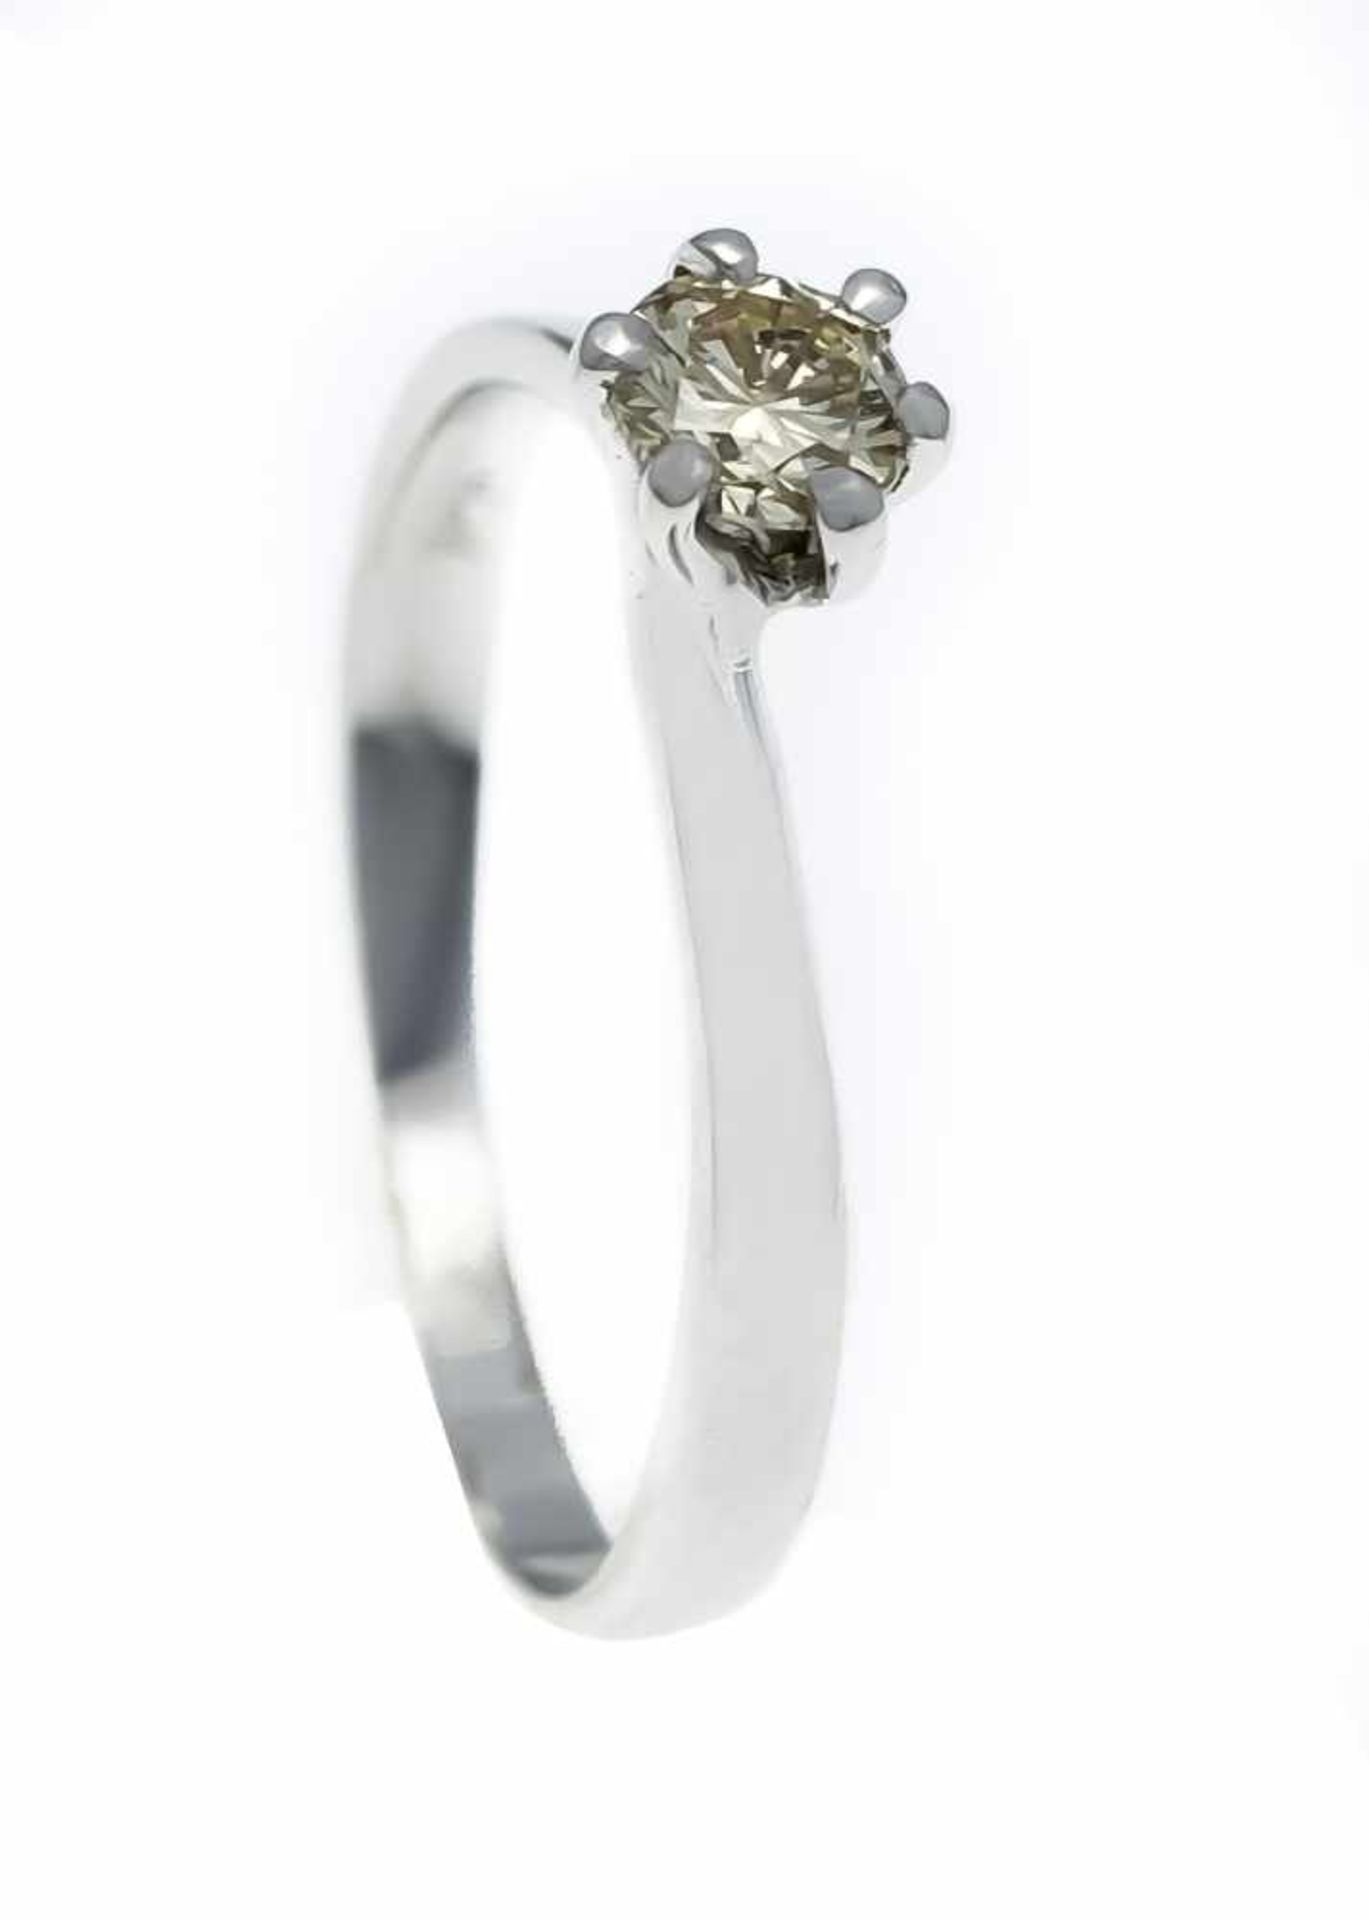 Brillant-Ring WG 585/000 mit einem Brillanten 0,34 ct FancyChampagner/SI, RG 55, 1,7 g- - -22.69 %